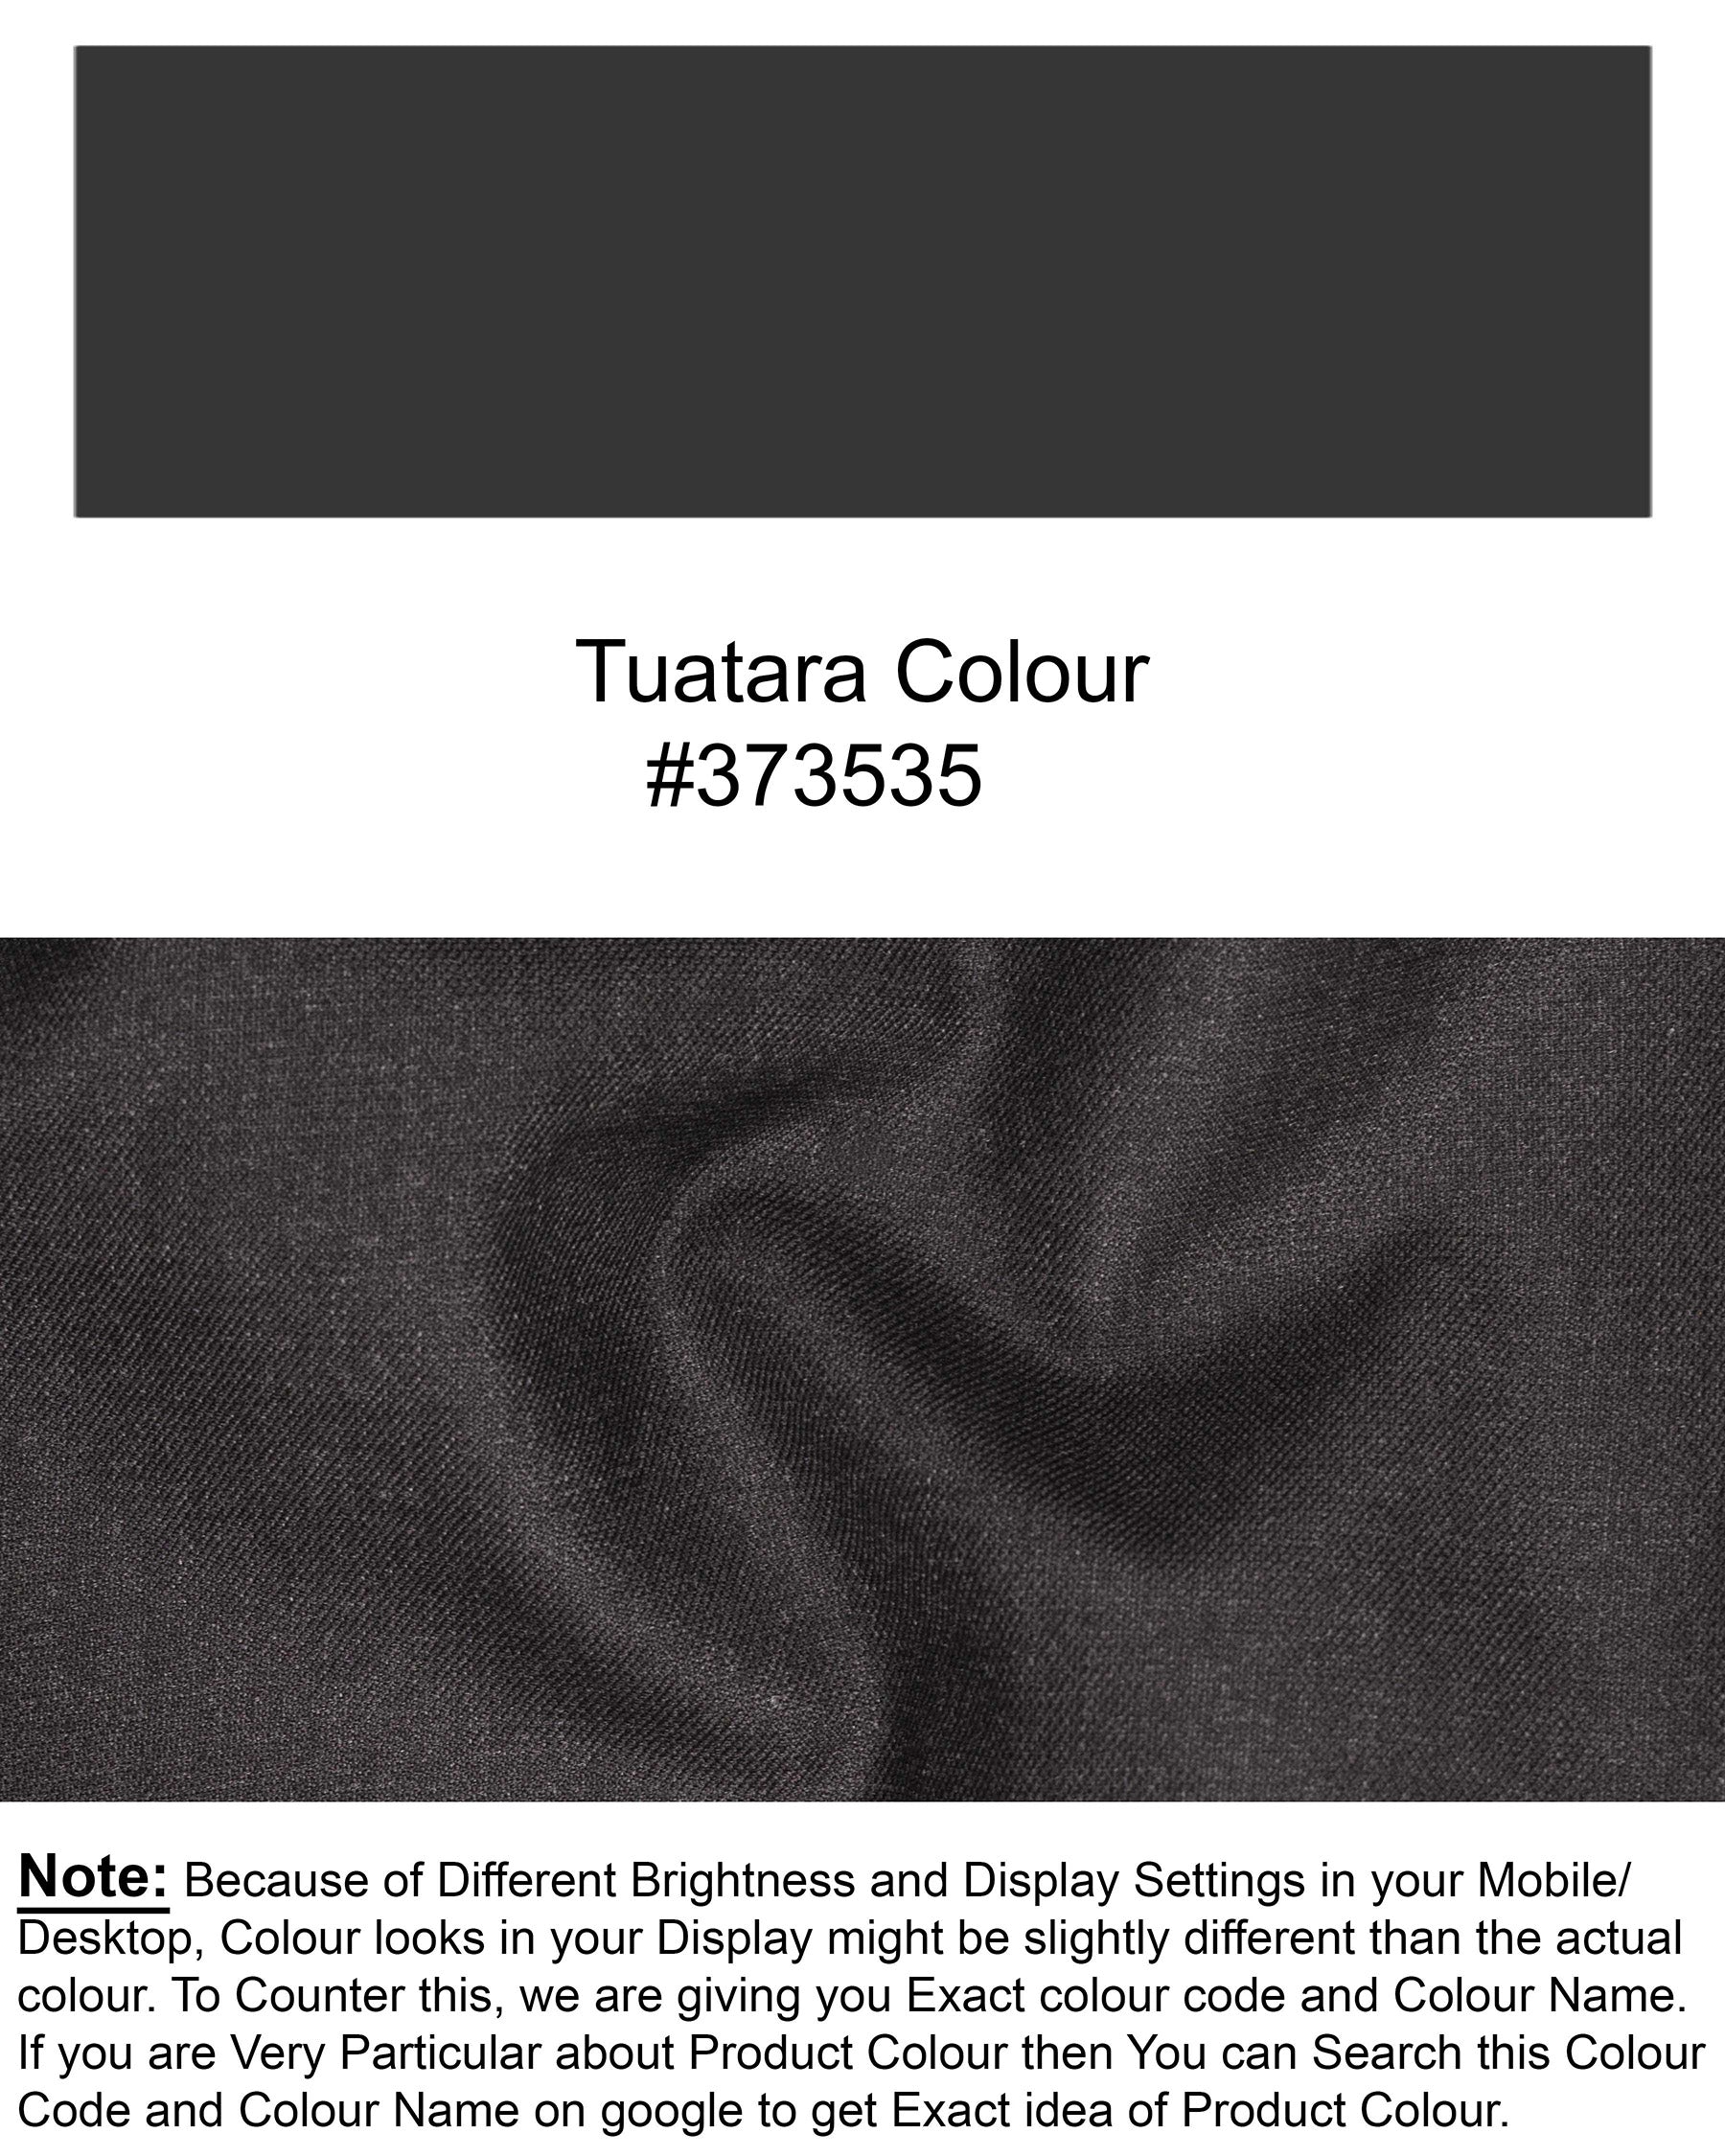 Tuatara Grey Waistcoat V1831-36, V1831-38, V1831-40, V1831-42, V1831-44, V1831-46, V1831-48, V1831-50, V1831-52, V1831-54, V1831-56, V1831-58, V1831-60